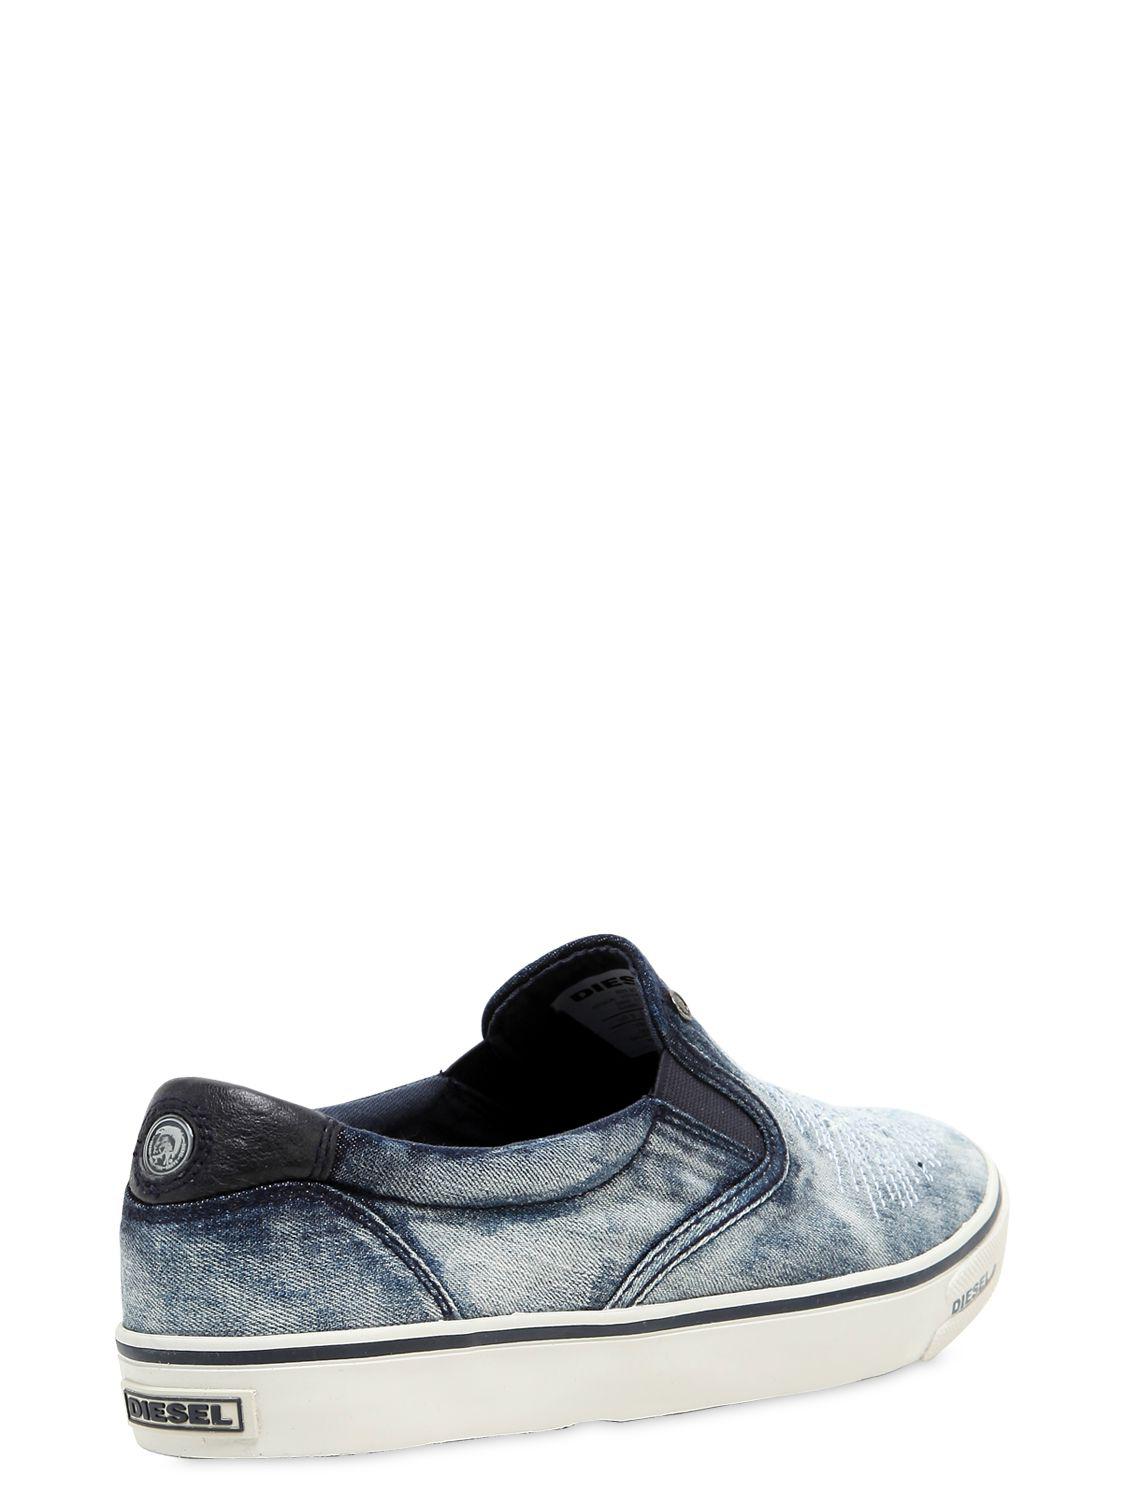 DIESEL Ripped Denim Slip-on Sneakers in Blue - Lyst